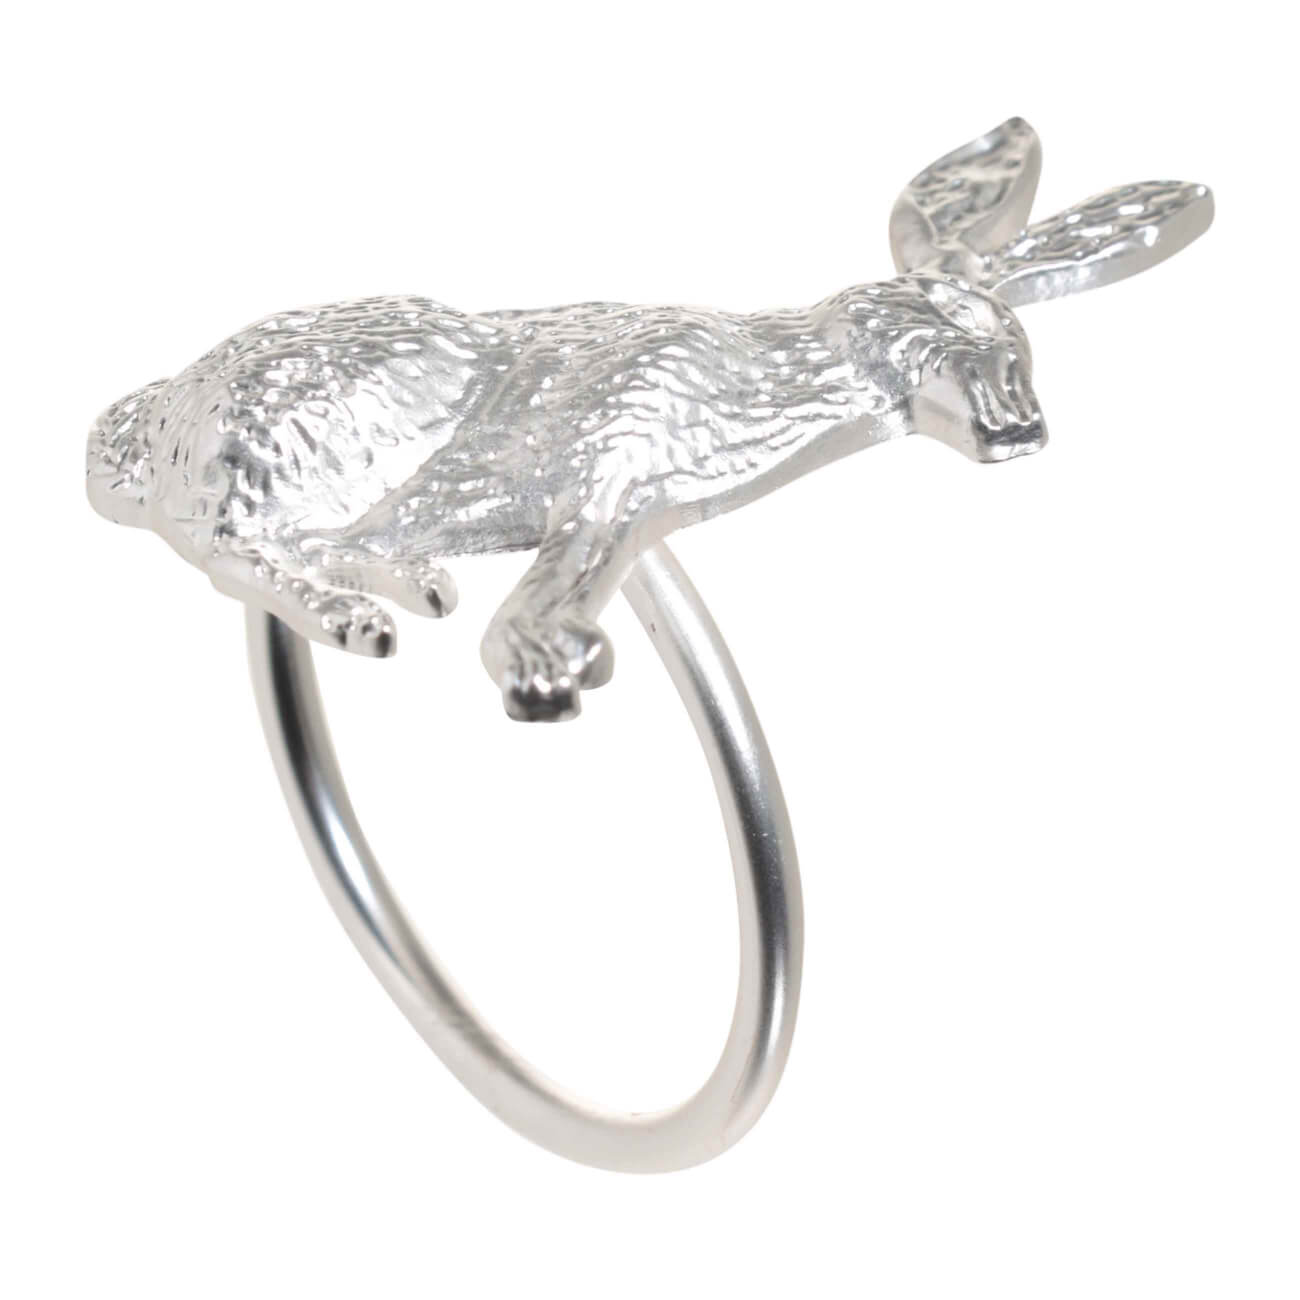 Кольцо для салфеток, 5 см, металл, серебристое, Кролик, Pure Easter кольцо amore ок ное в серебре безразмерно